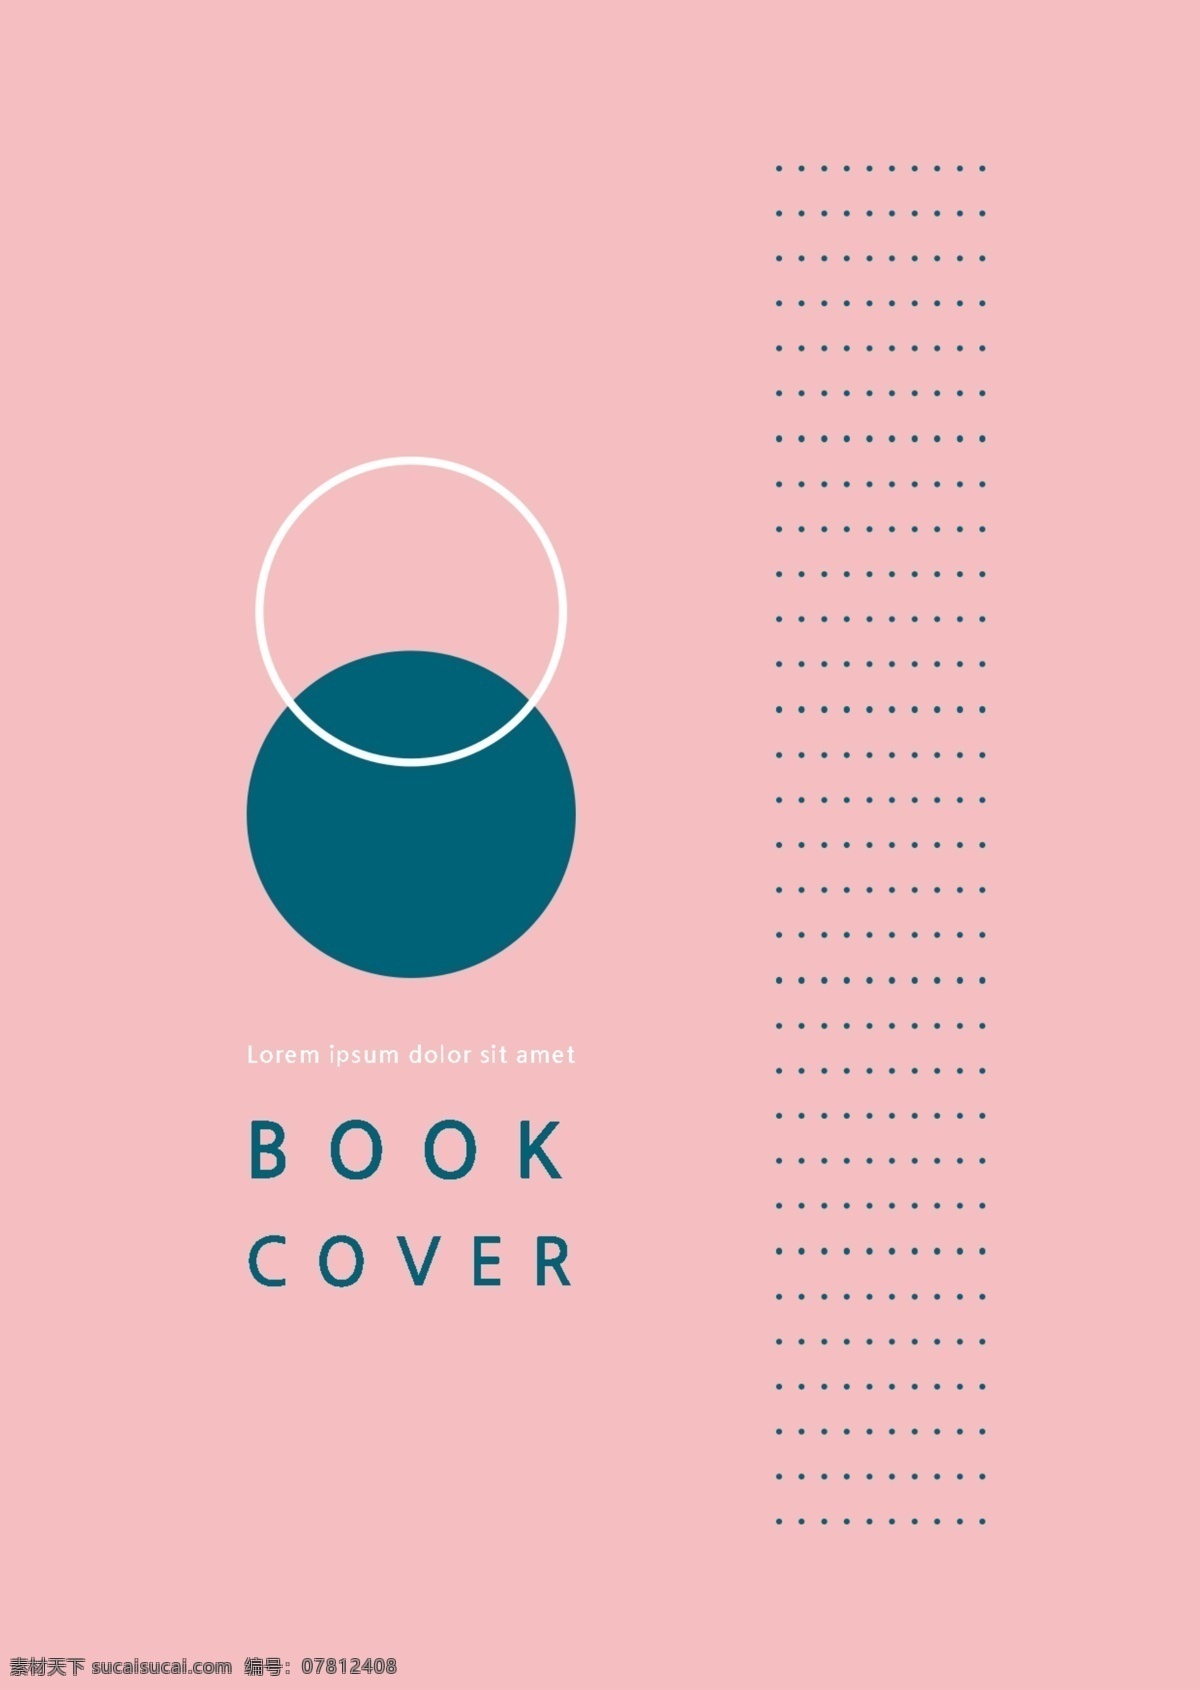 粉色 蓝色 简单 块 私人 出版物 文化 创意 艺术设计 企业 商业 通用 专辑 封面 模板 谈谈关于 韩国 艺术 创作 抽象 简洁明了 科学和技术 独立 新鲜 几何 元素 娃